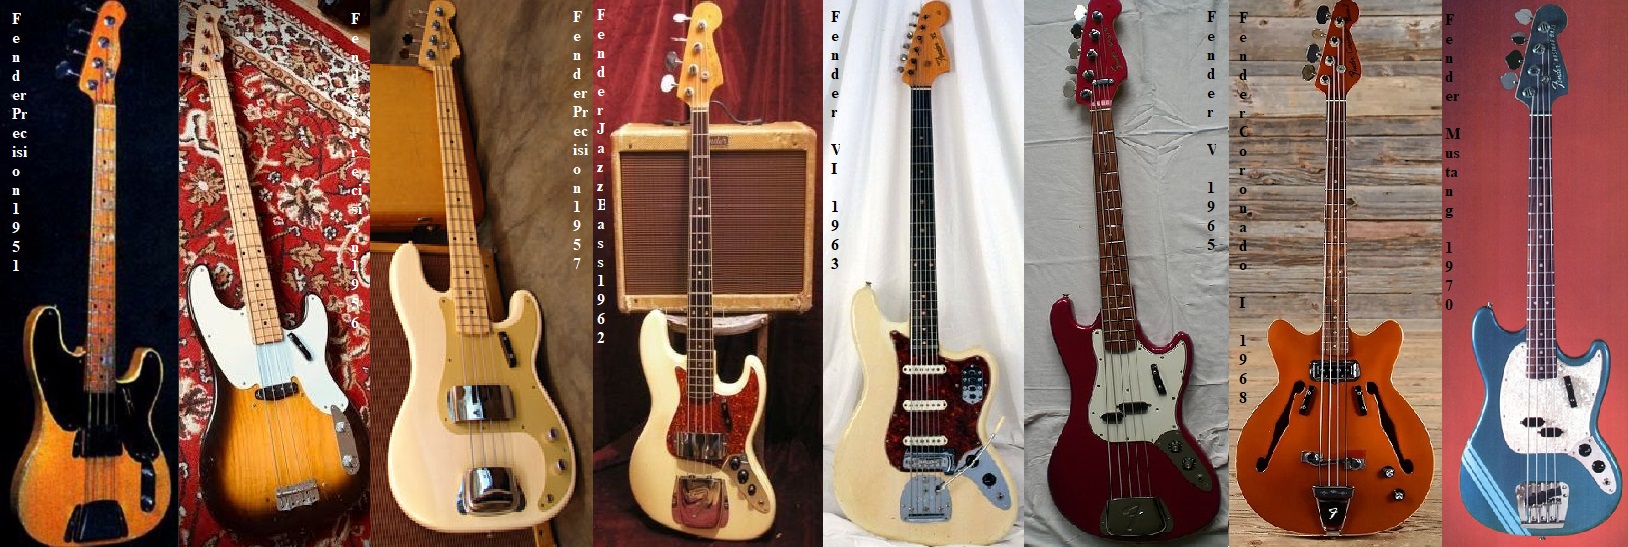 Leo fender ed i suoi bassi realizzati in Fender nel periodo1951-1971.